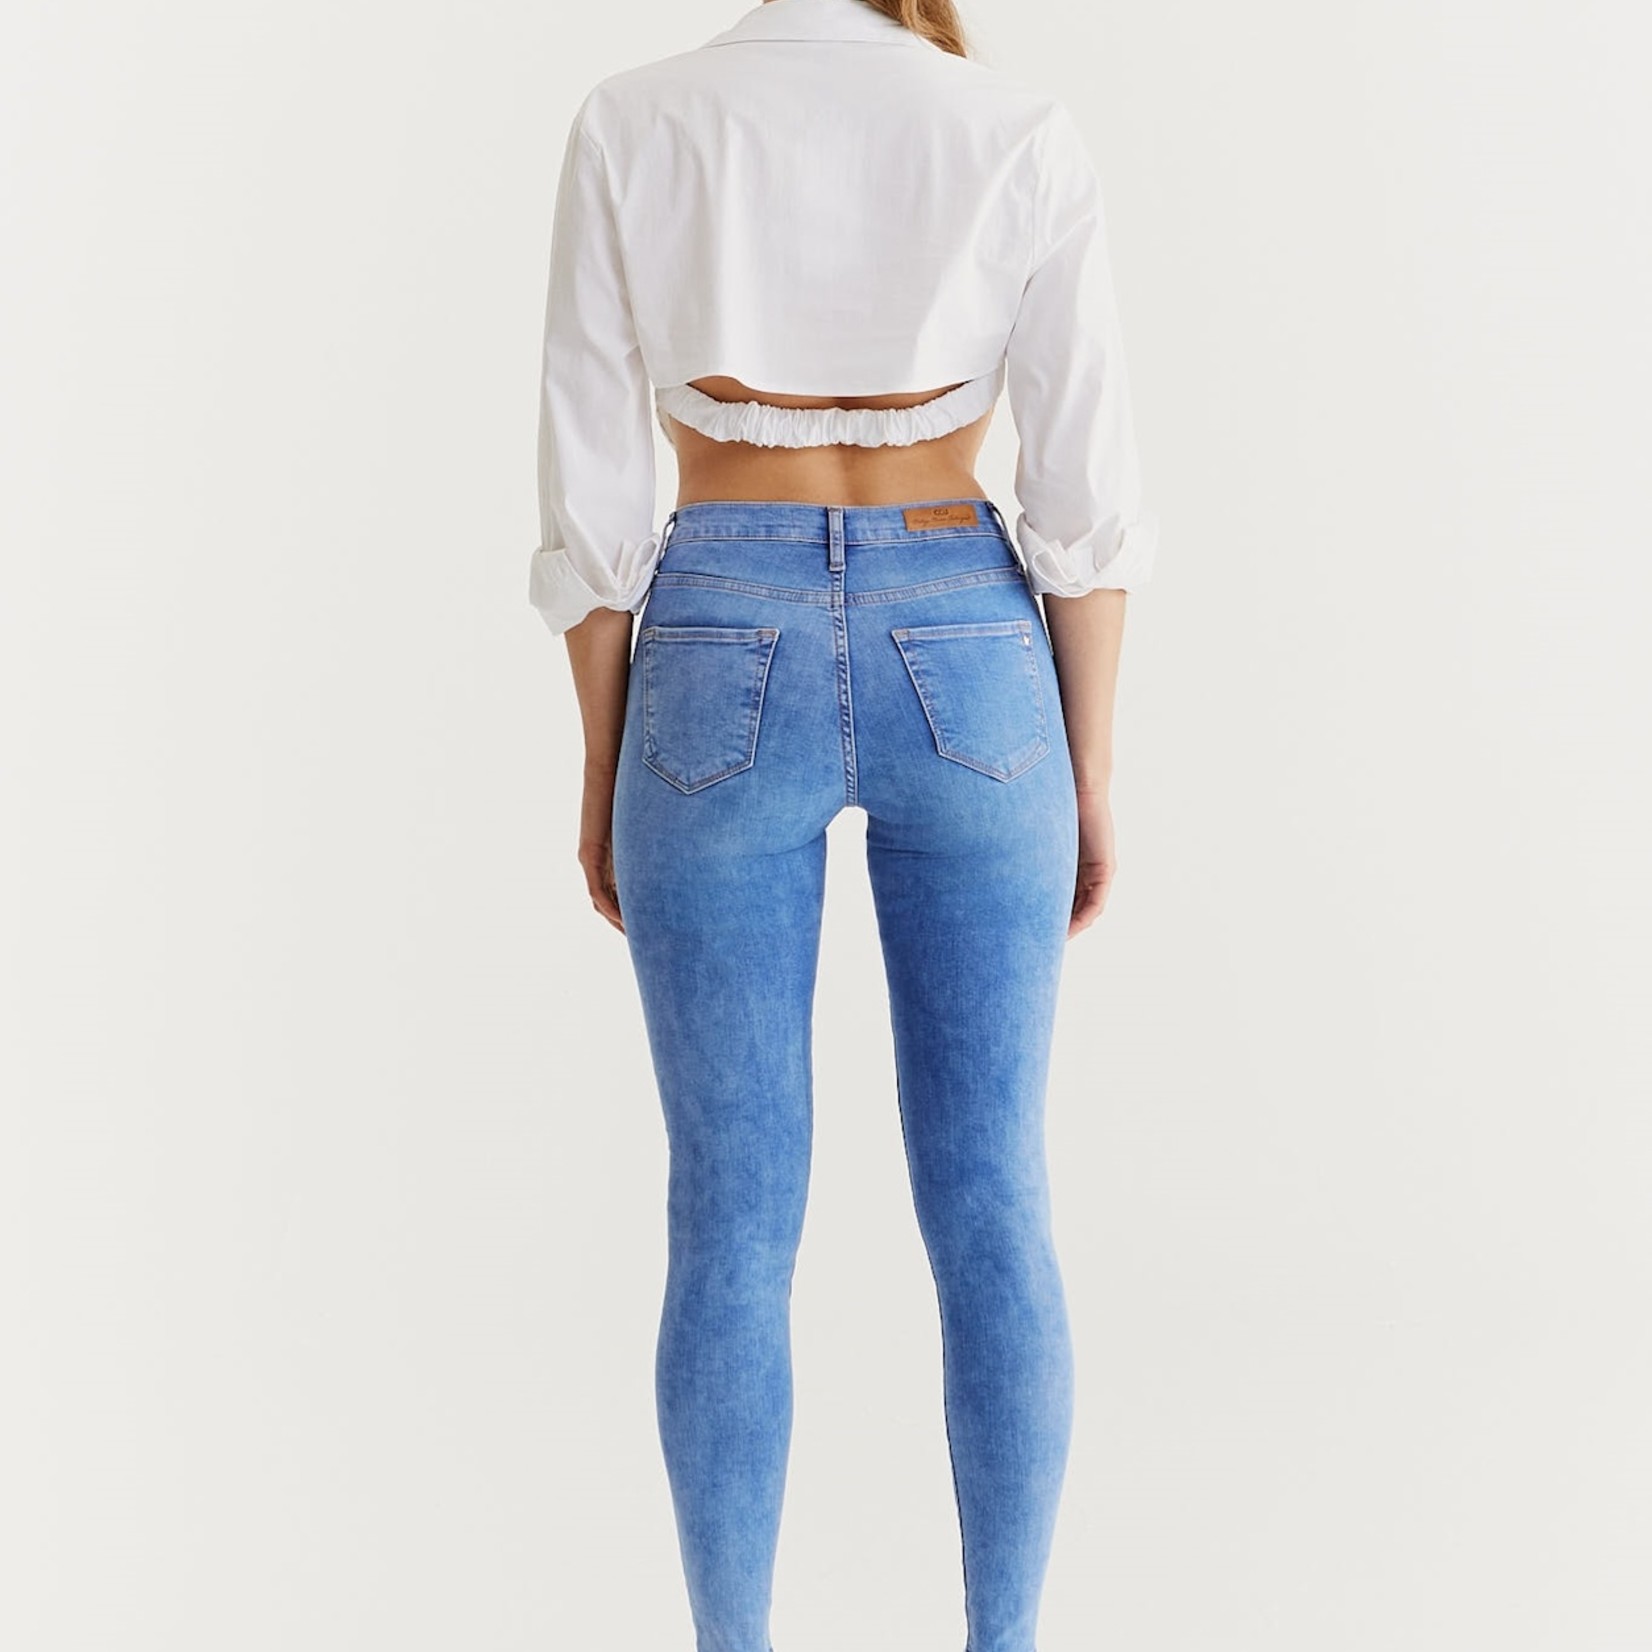 C.O.J. C.O.J. Sophia Skinny Jeans